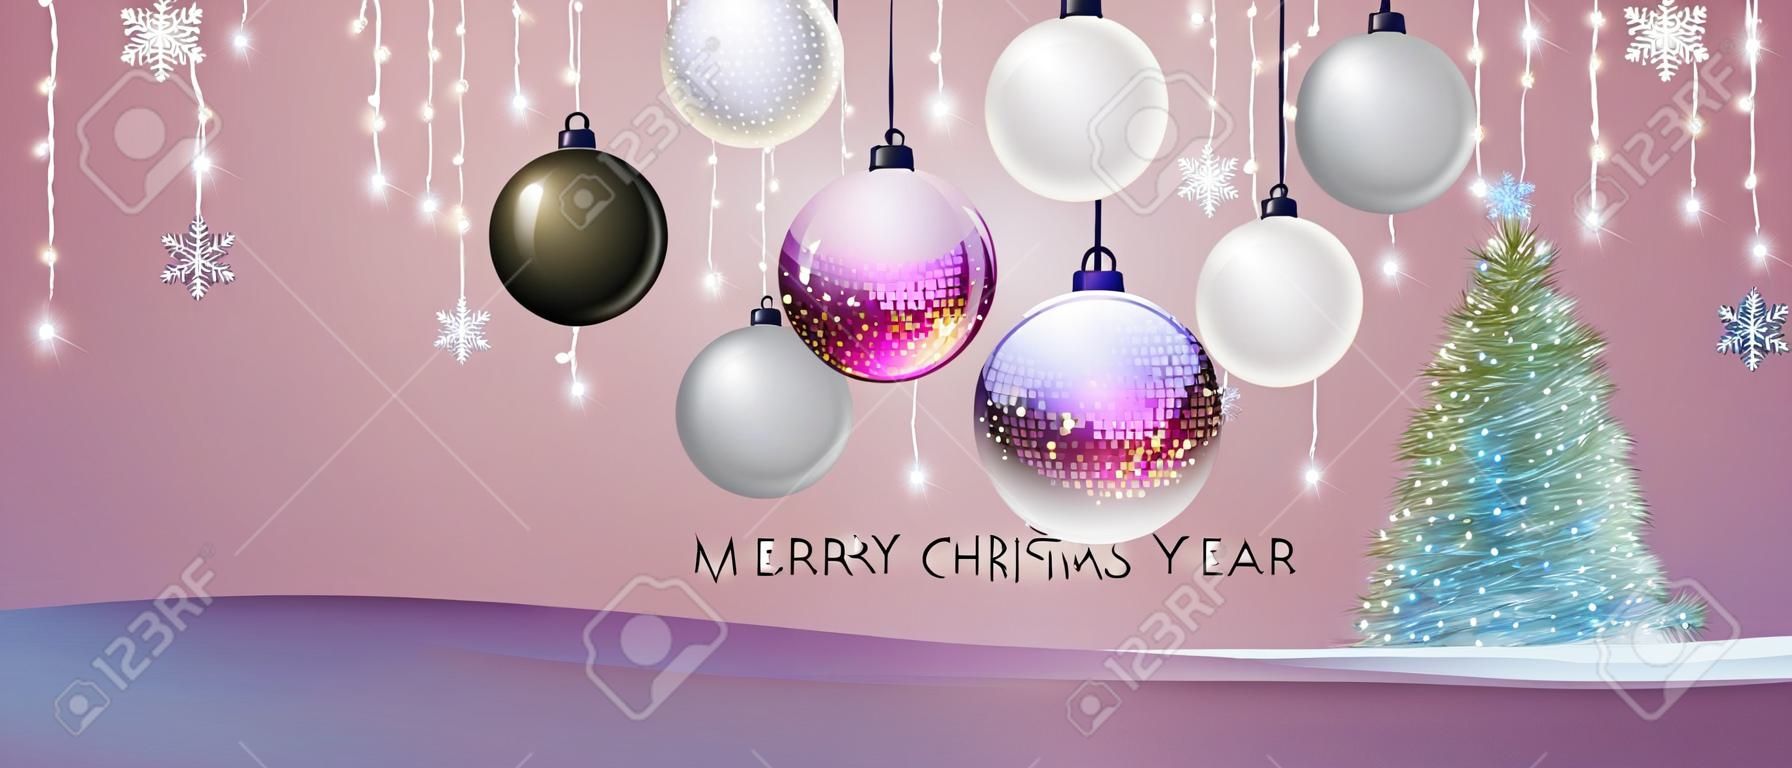 Feliz Natal e feliz cartaz de Ano Novo com decorações de férias de Natal. Fundo de feriado de Natal. Ilustração vetorial